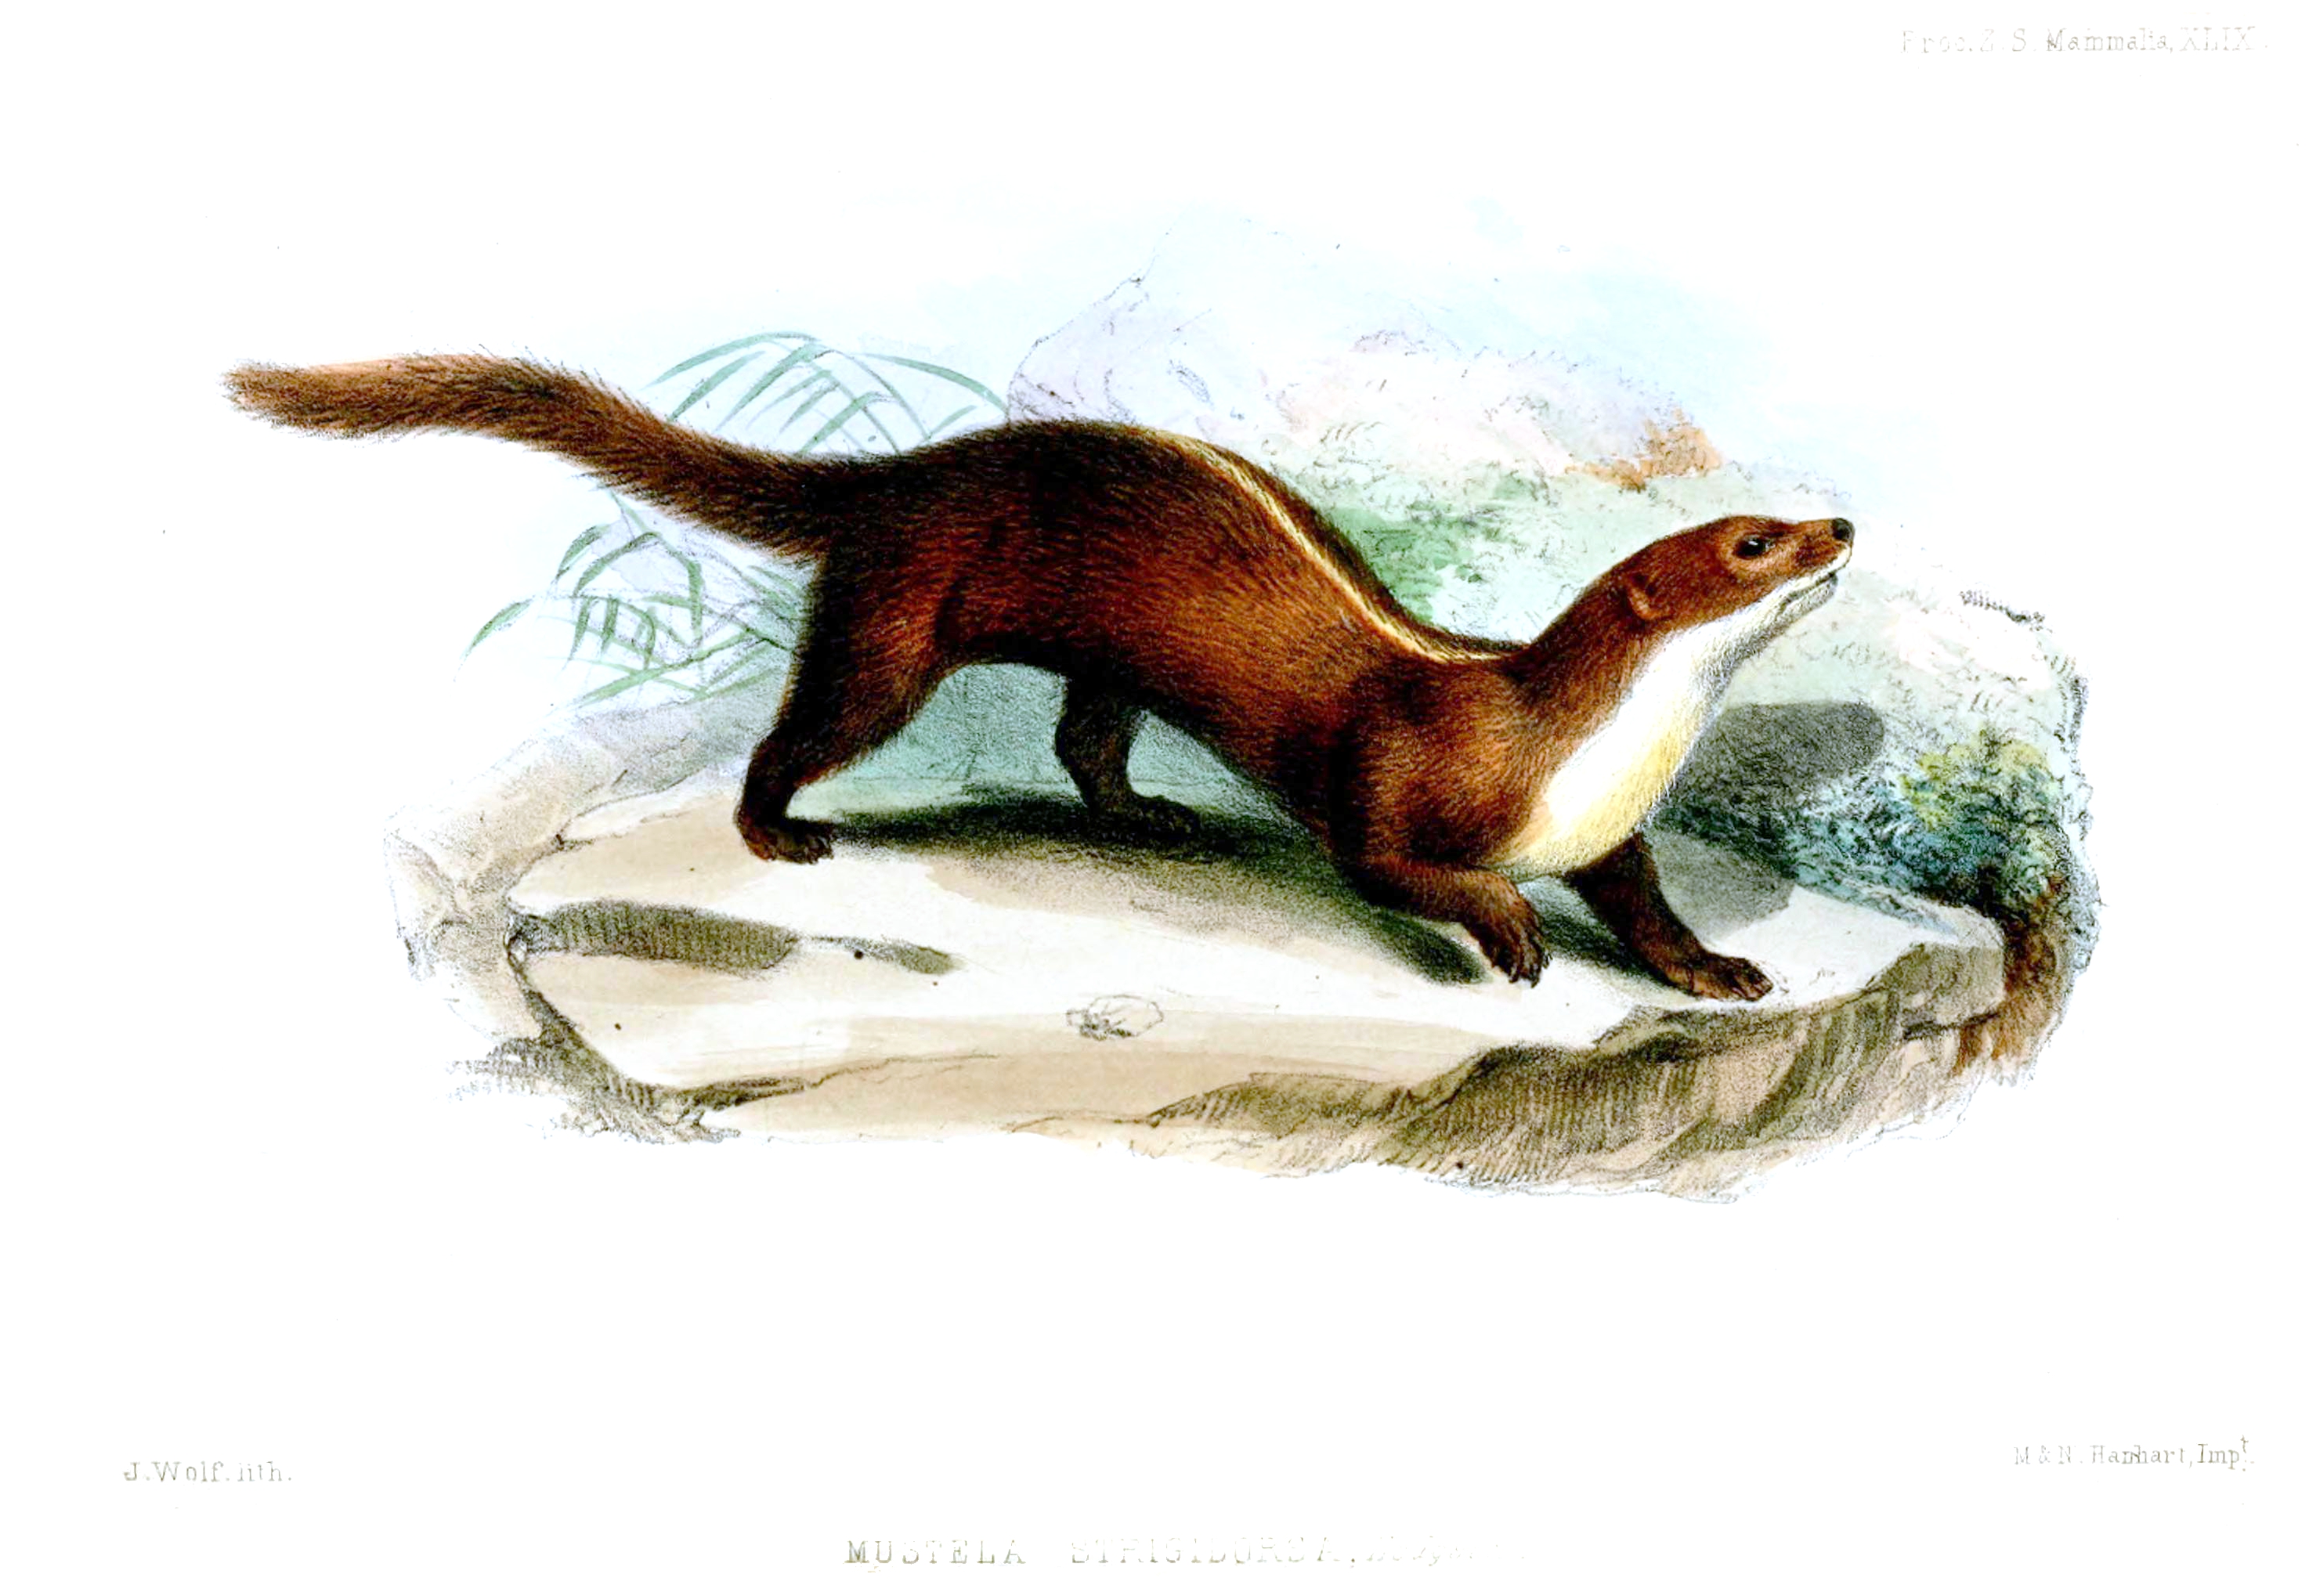 Least weasel - Wikipedia